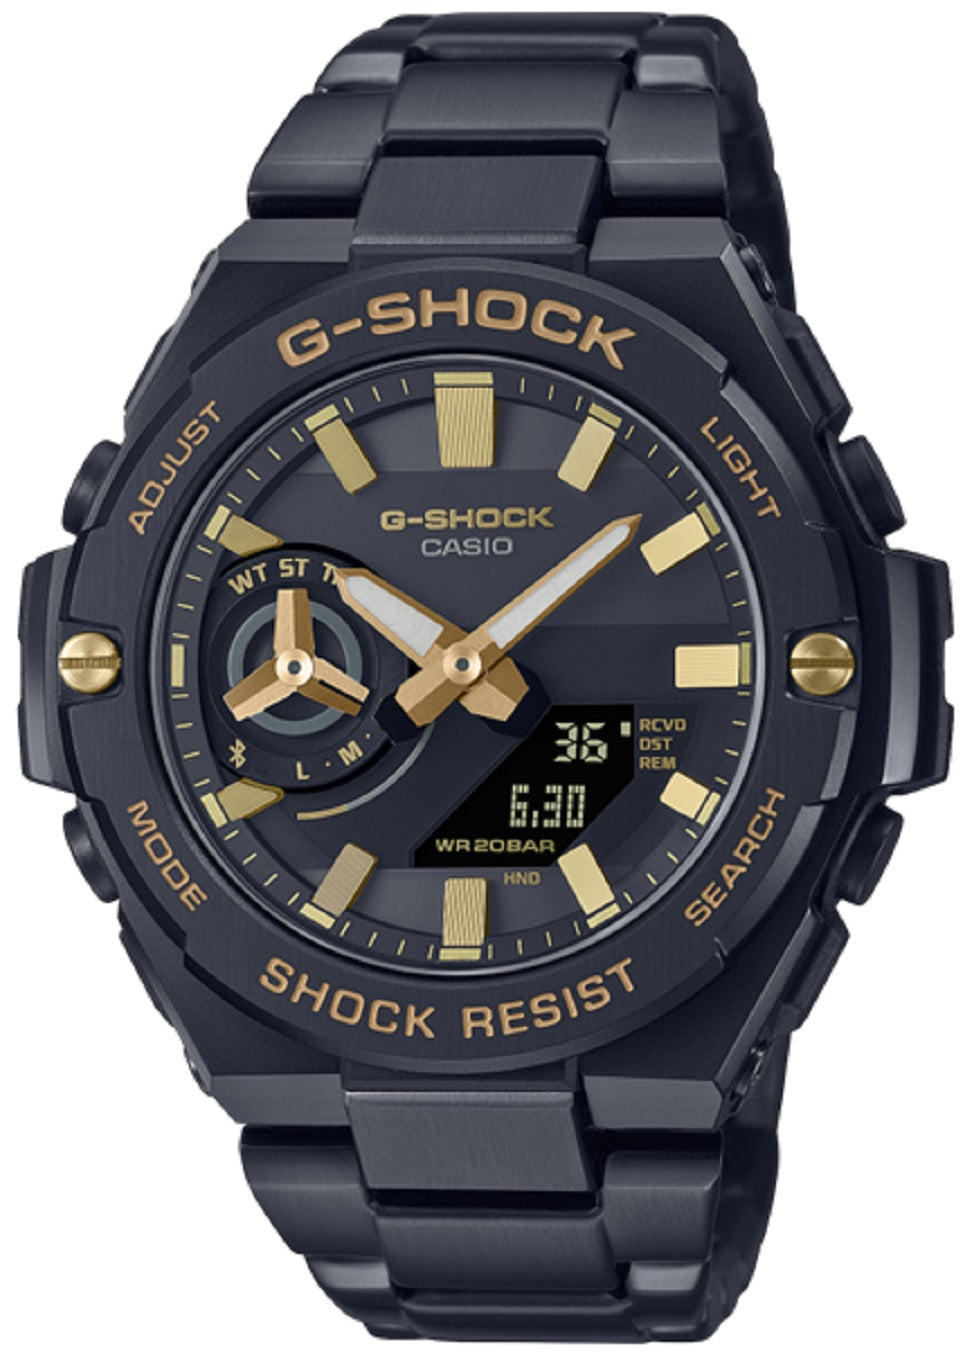 Casio G-shock G-steel GST-B500BD-1A9 Solar Digital Analog Stainless Steel Strap Watch-Watch Portal Philippines